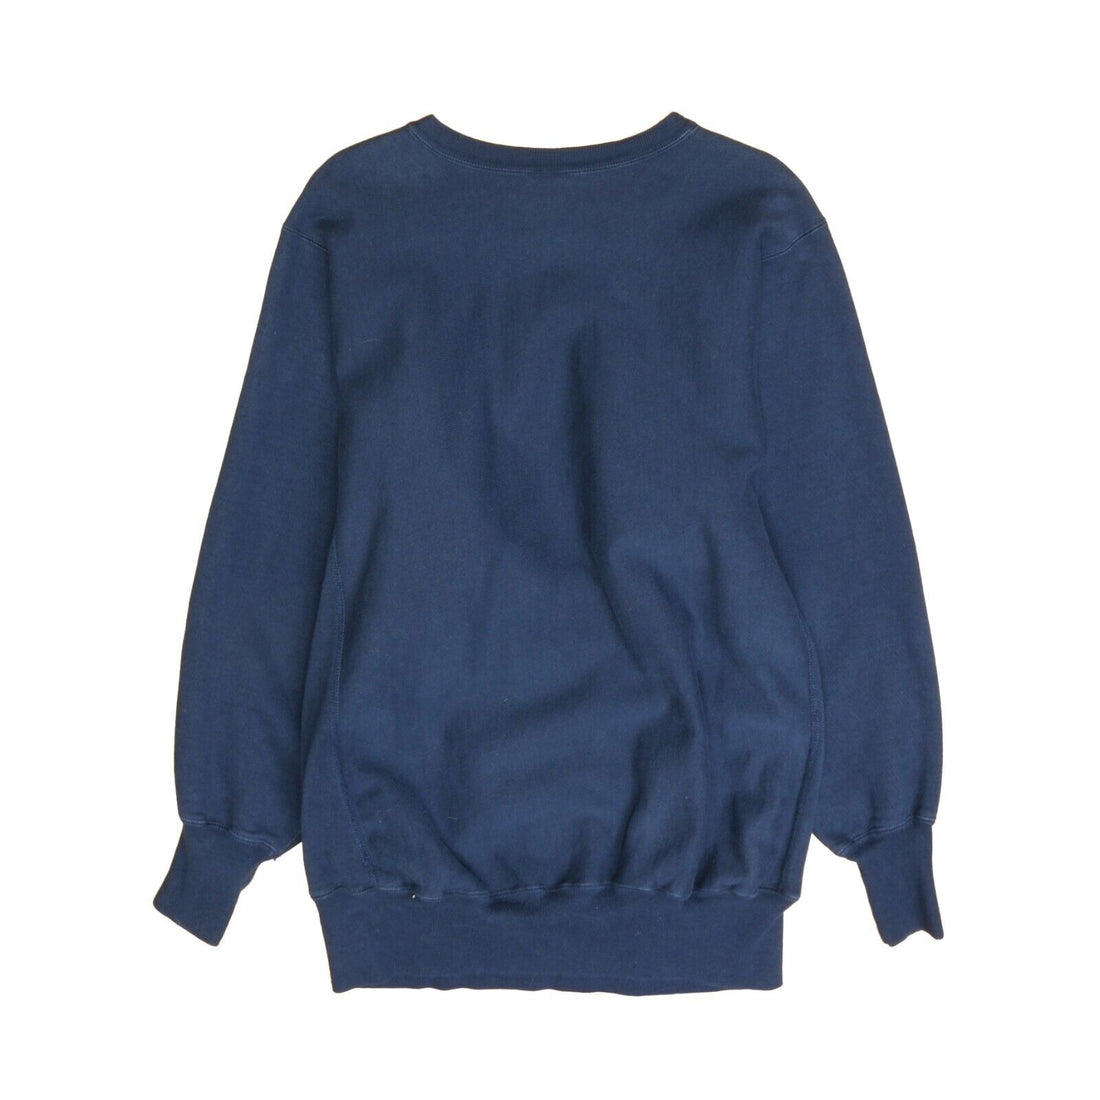 Vintage CSB Champion Reverse Weave Sweatshirt Crewneck Size 2XL Blue 90s